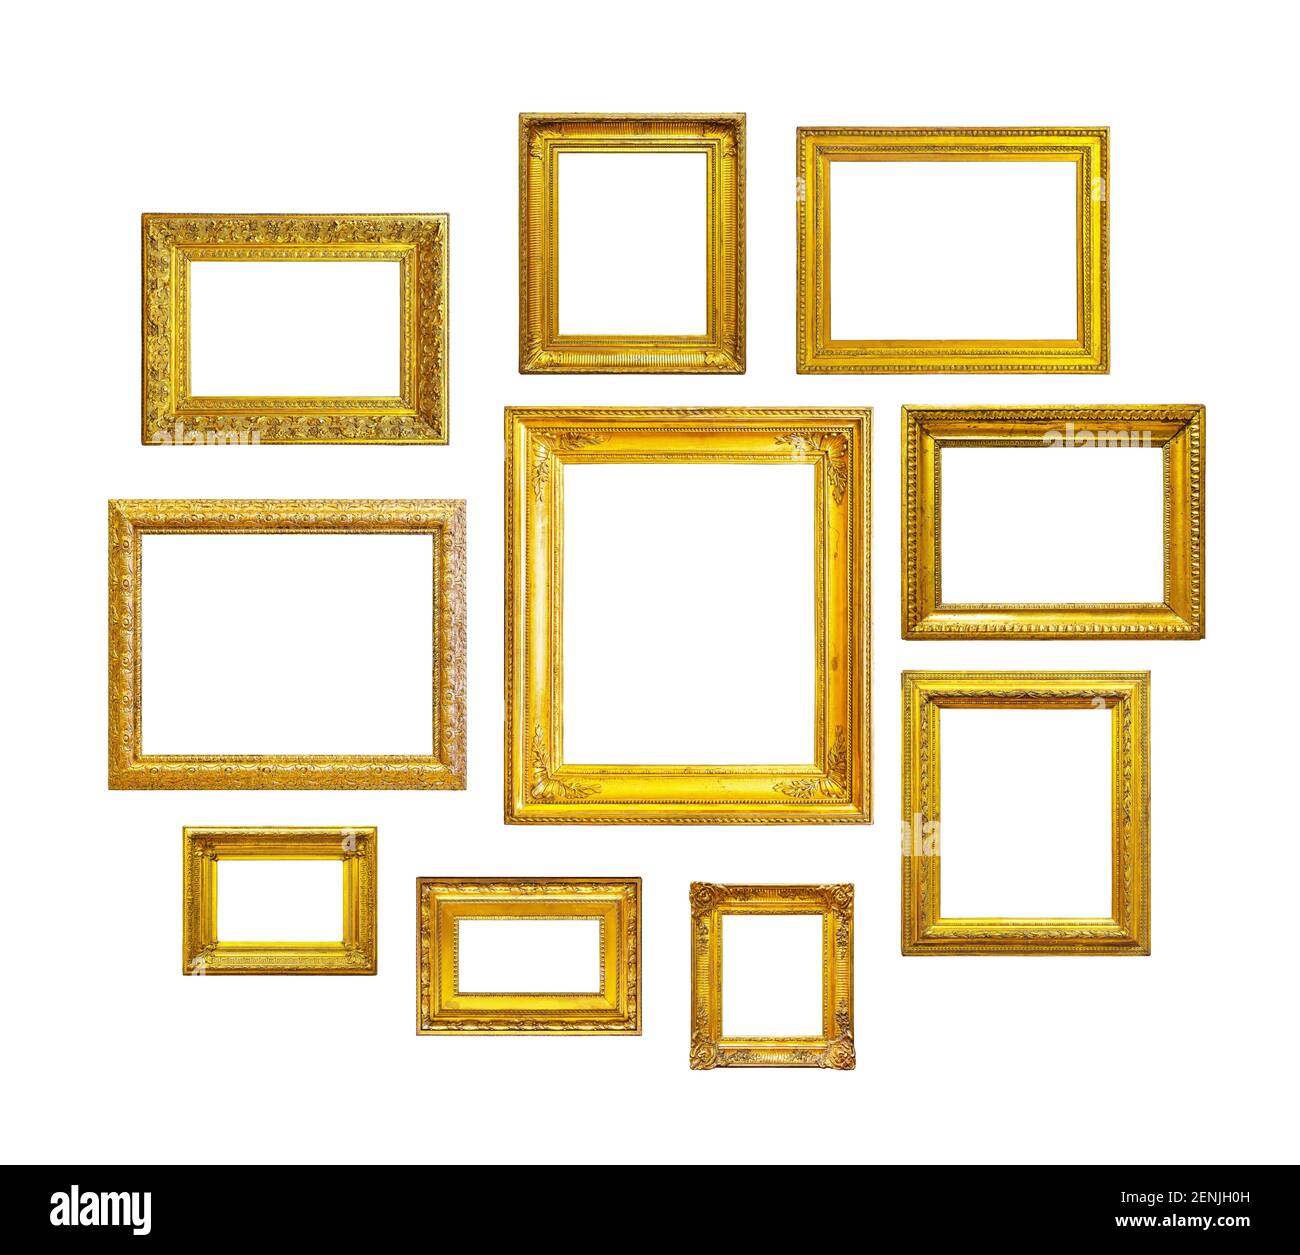 Golden vintage cornici su sfondo bianco. Set di cornici dorate per dipinti, specchi o foto isolate su sfondo bianco. Foto Stock